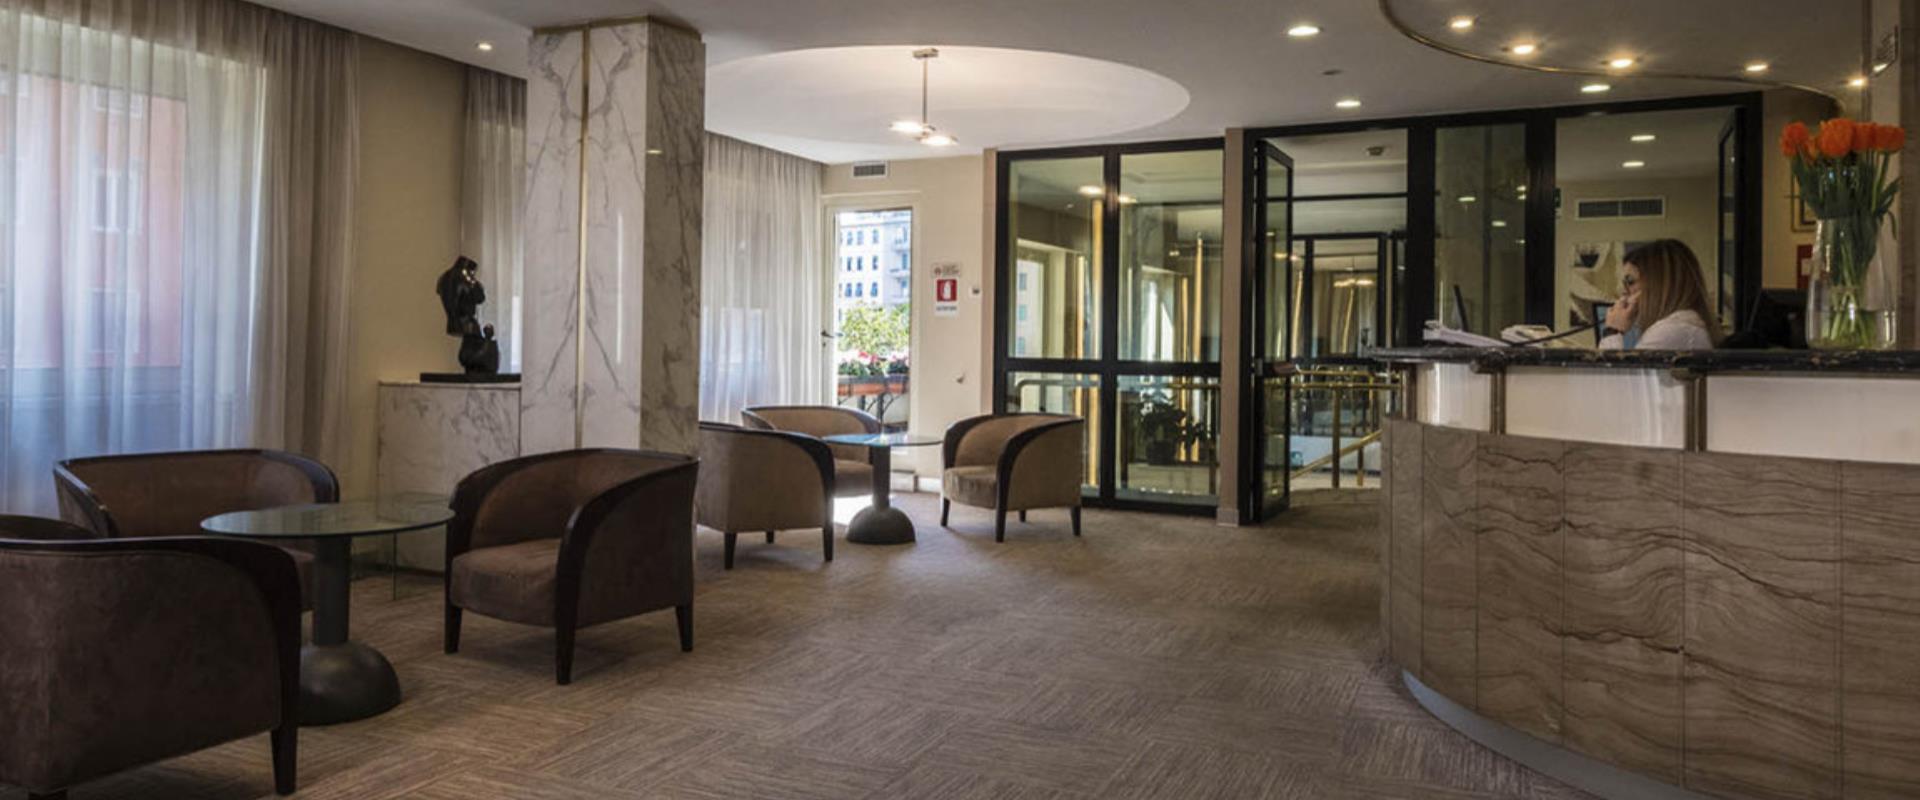 Best Western Hotel Piccadilly Hall, Hotel 3 Sterne San Giovanni in Rom, vor kurzem renoviert